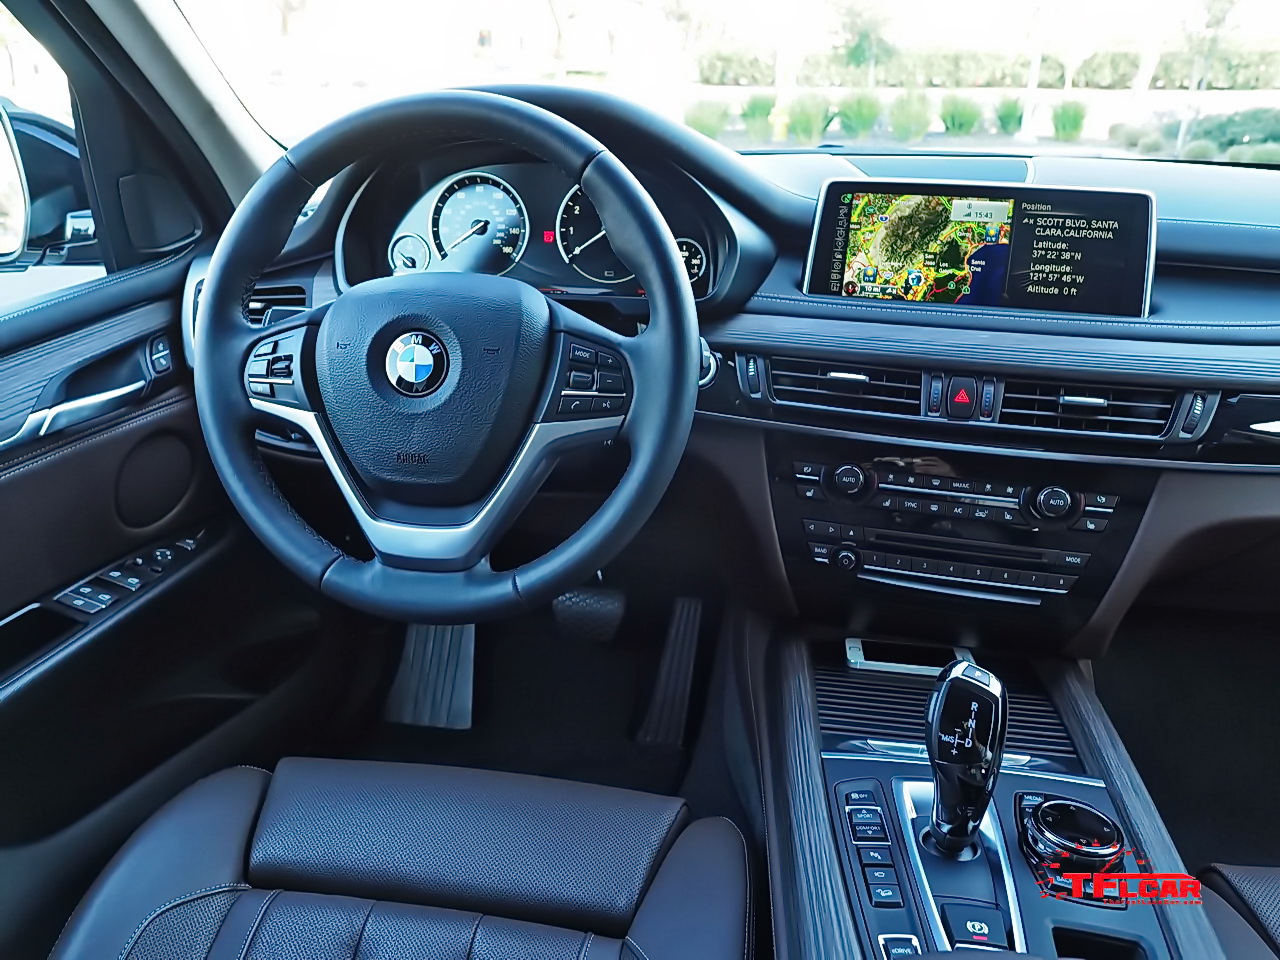 2016 BMW X5 40e plug-in hybrid cockpit